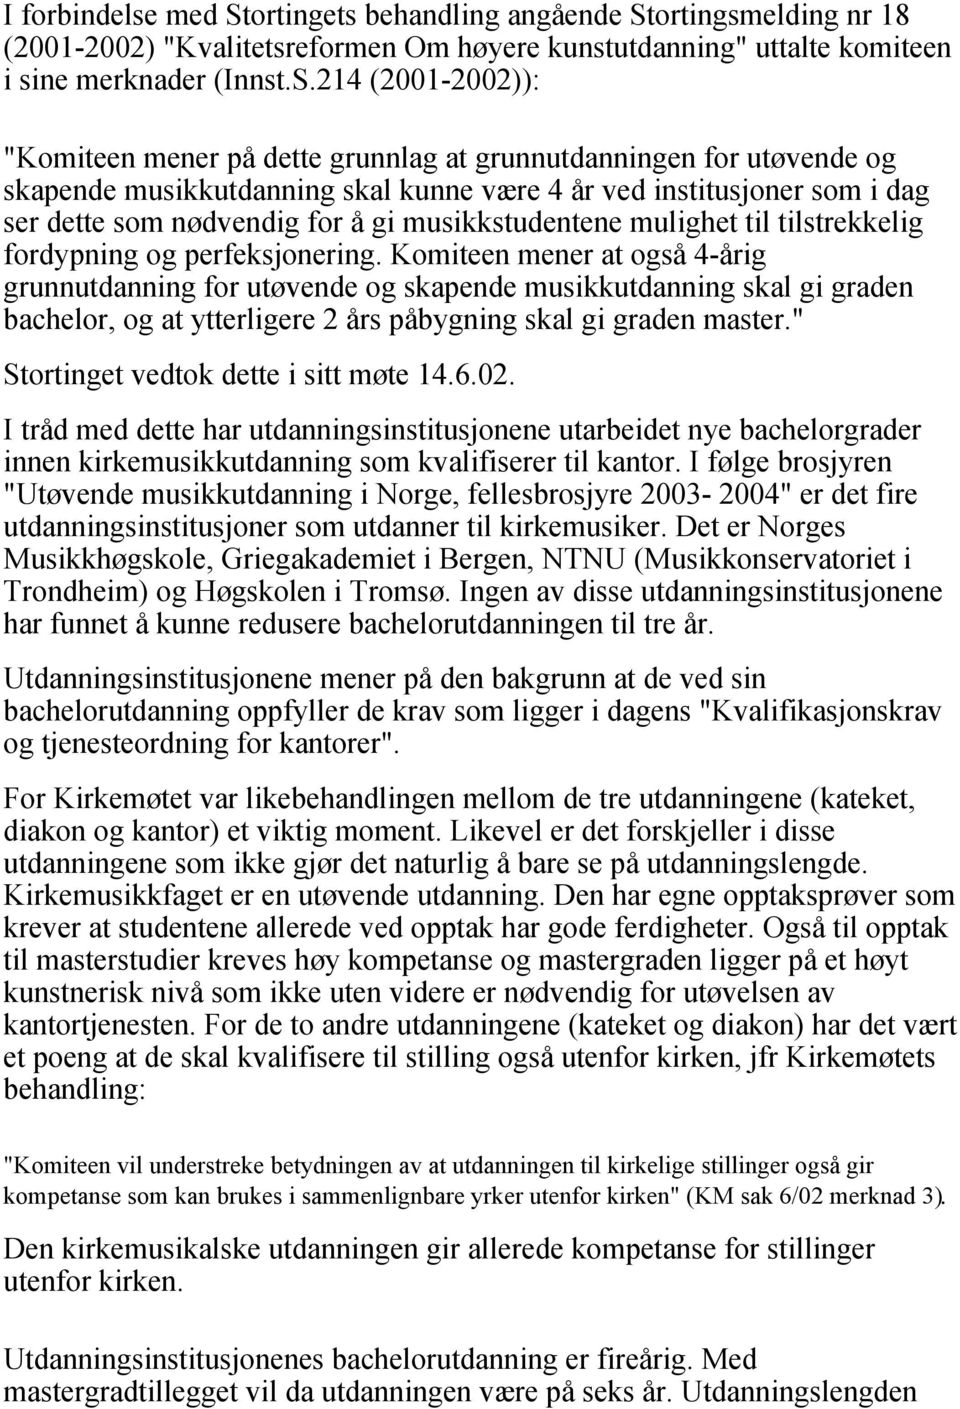 ortingsmelding nr 18 (2001-2002) "Kvalitetsreformen Om høyere kunstutdanning" uttalte komiteen i sine merknader (Innst.S.